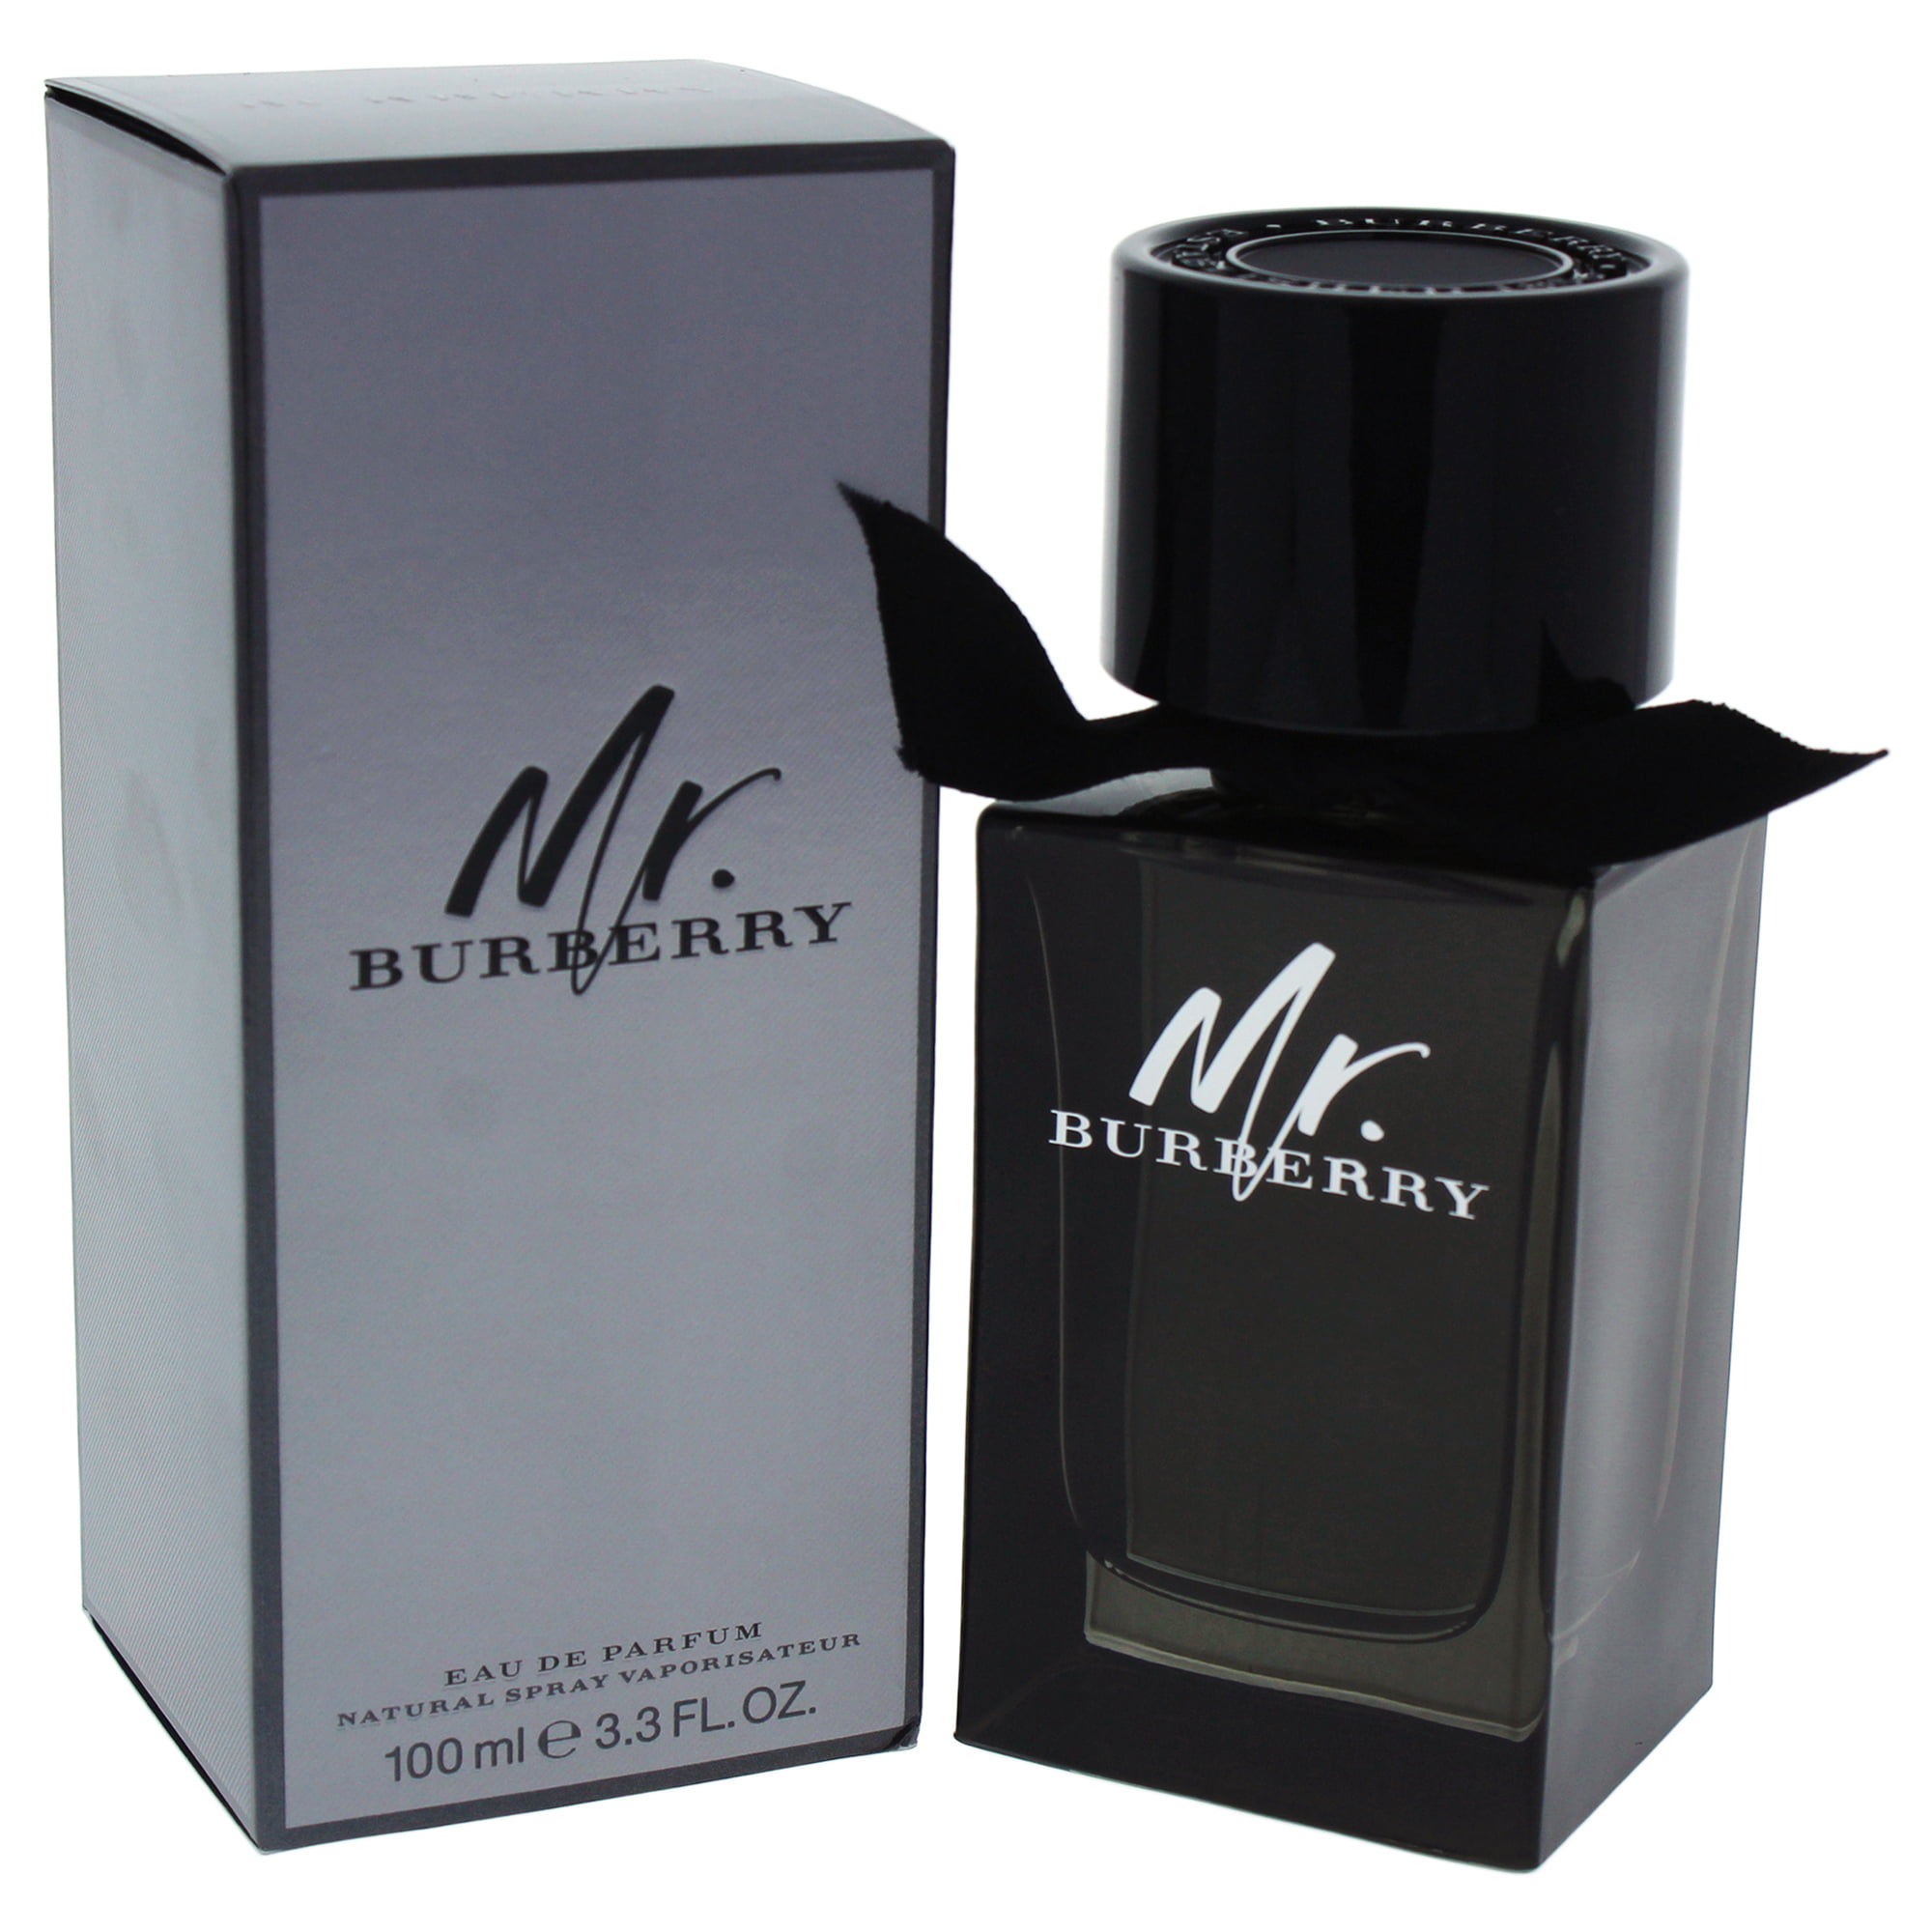 Kliniek Minder naam Burberry Mr. Burberry Eau de Parfum, Cologne for Men, 3.3 Oz - Walmart.com